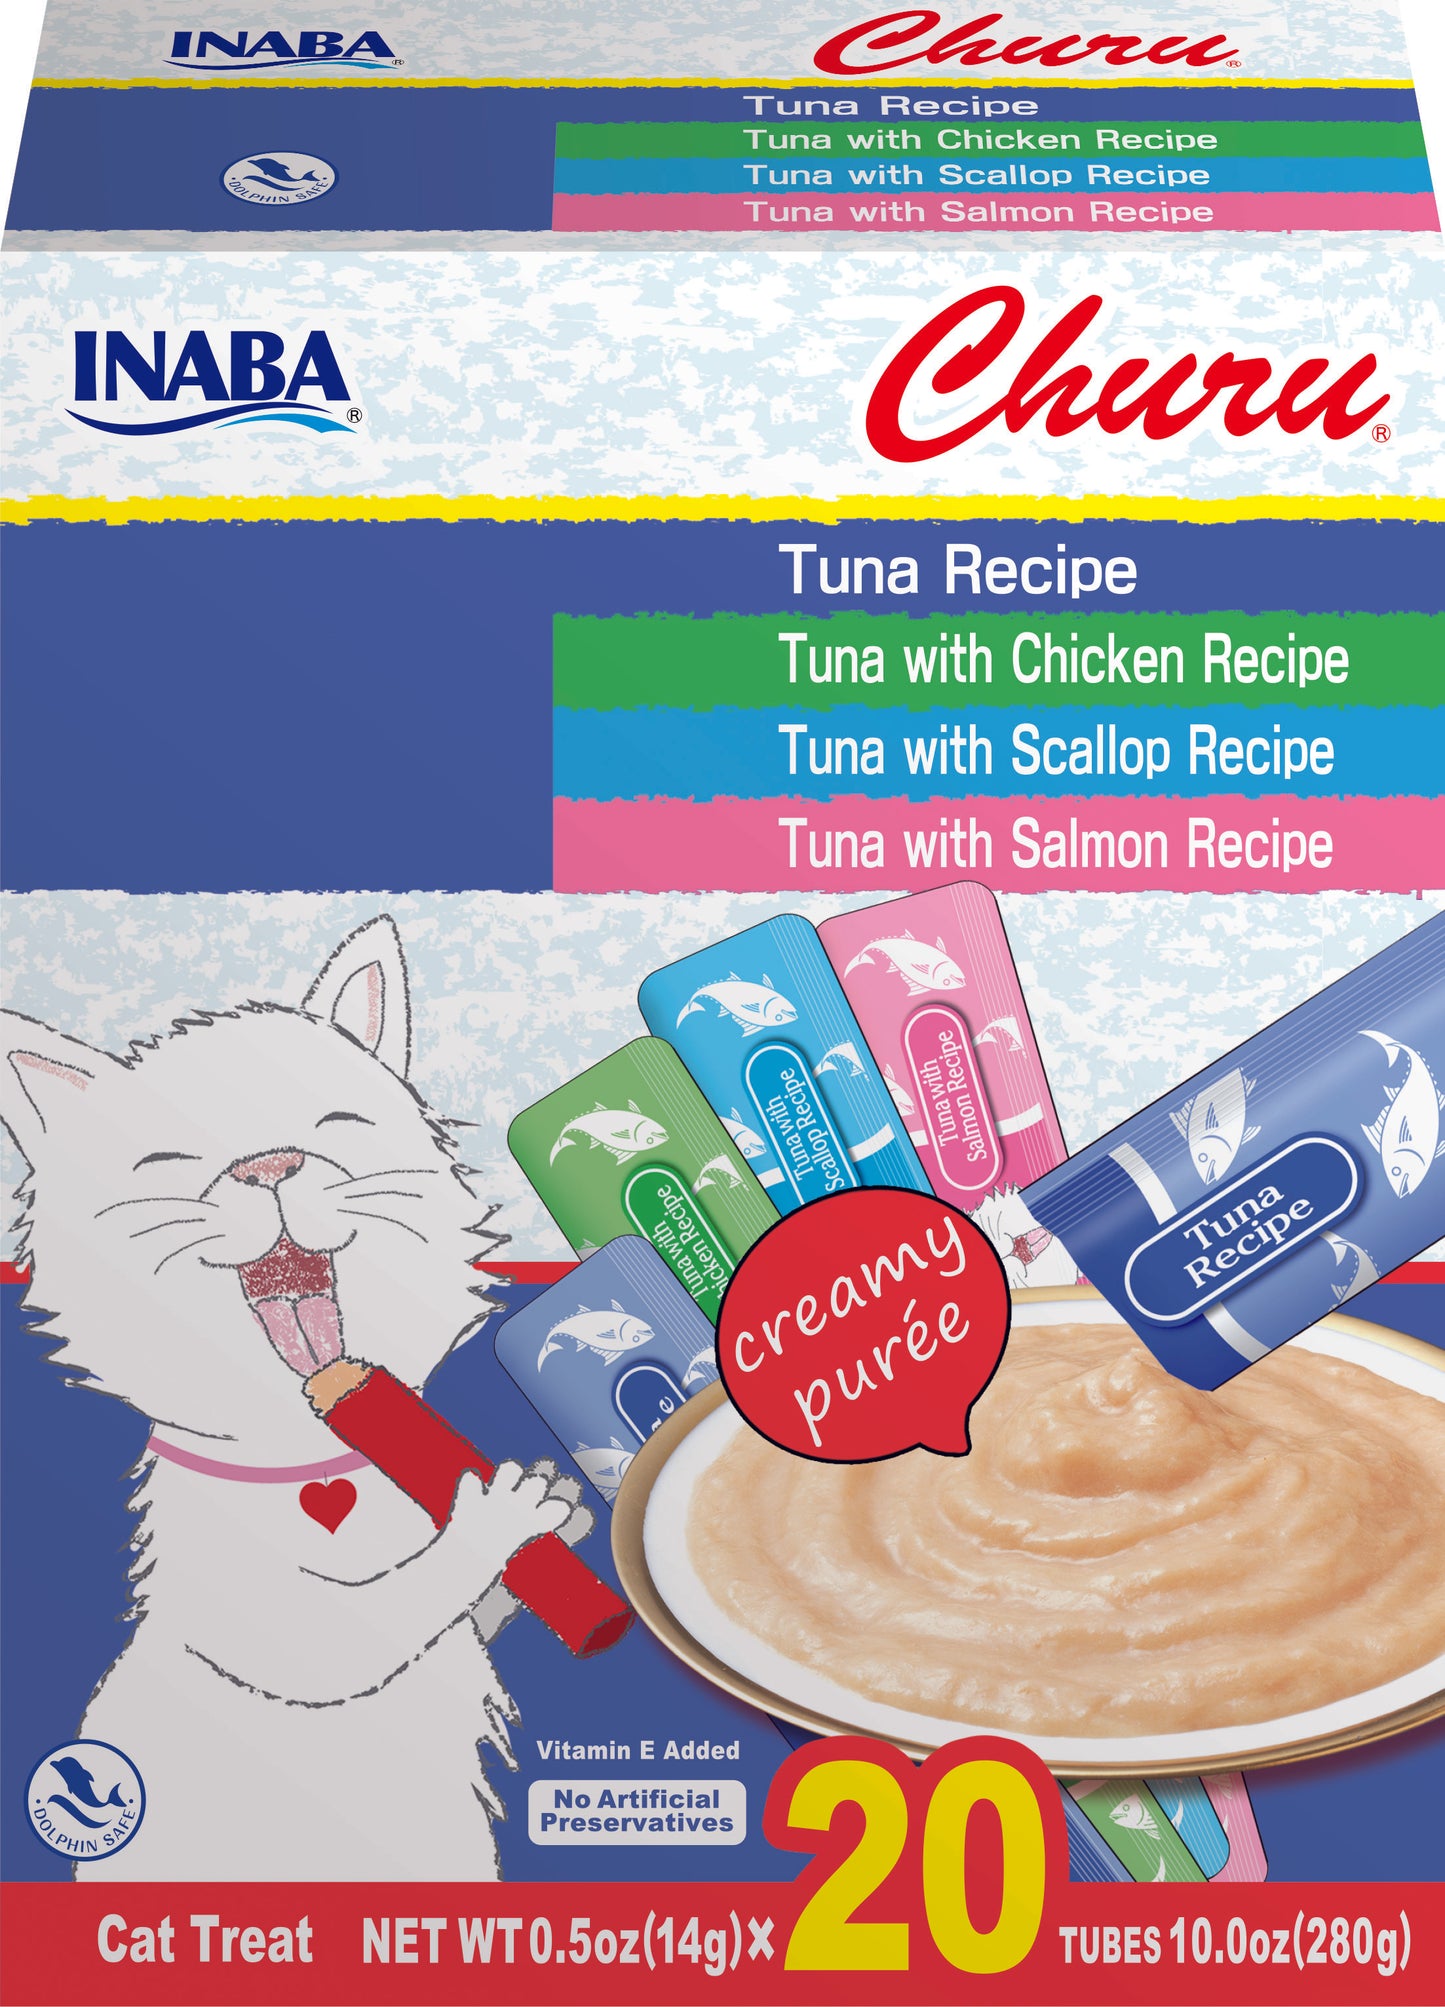 Inaba Churu Tuna Puree Variety Box 20 Tubes